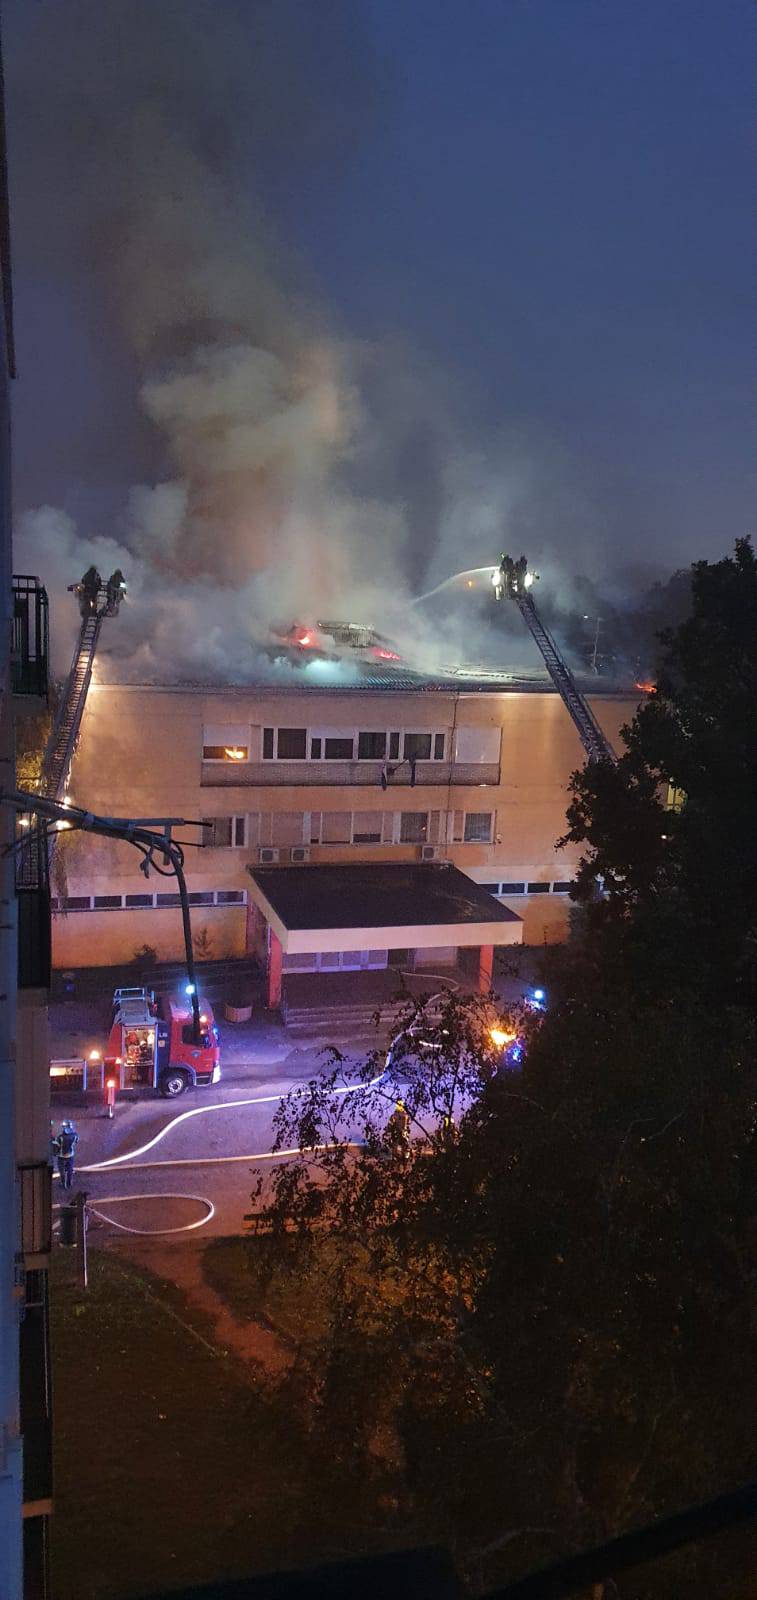 VIDEO Osnovna škola u Zagrebu gorjela više od dva sata, jedan vatrogasac je lakše ozlijeđen